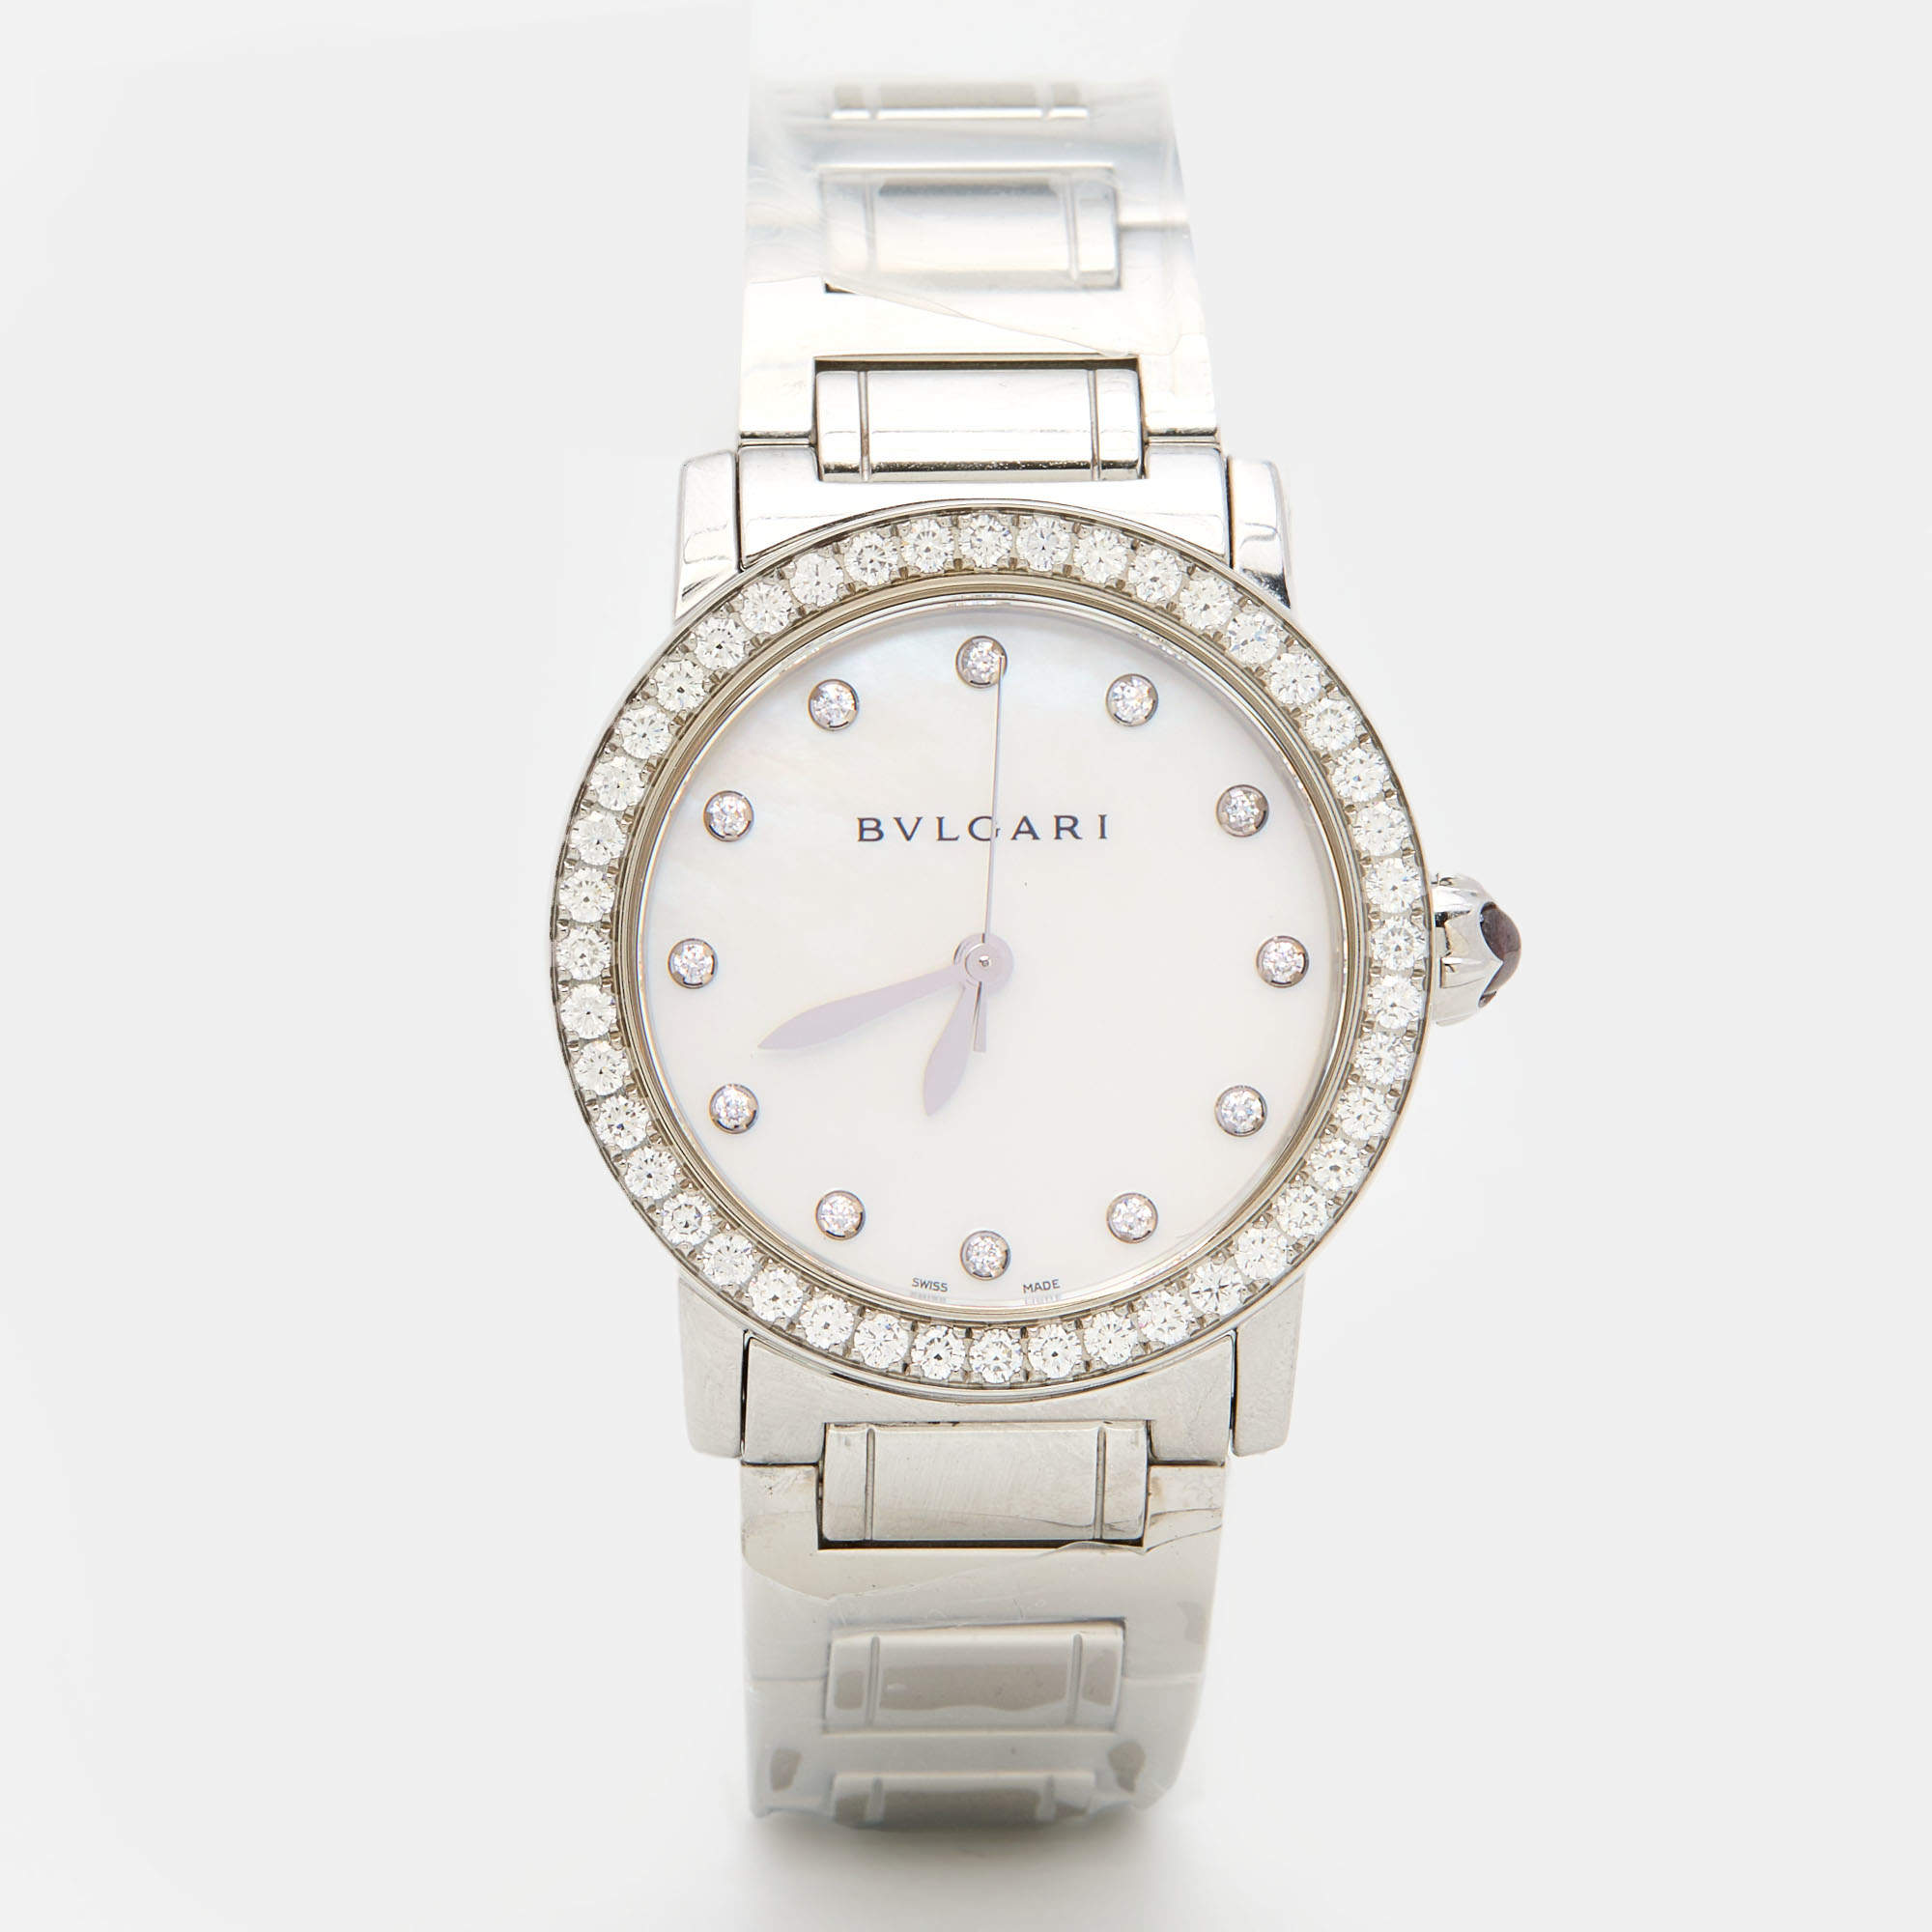 Bvlgari Mother of Pearl Diamond Stainless Steeel Bvlgari Bvlgari BBL33WSDS/12 Women's Wristwatch 33 mm